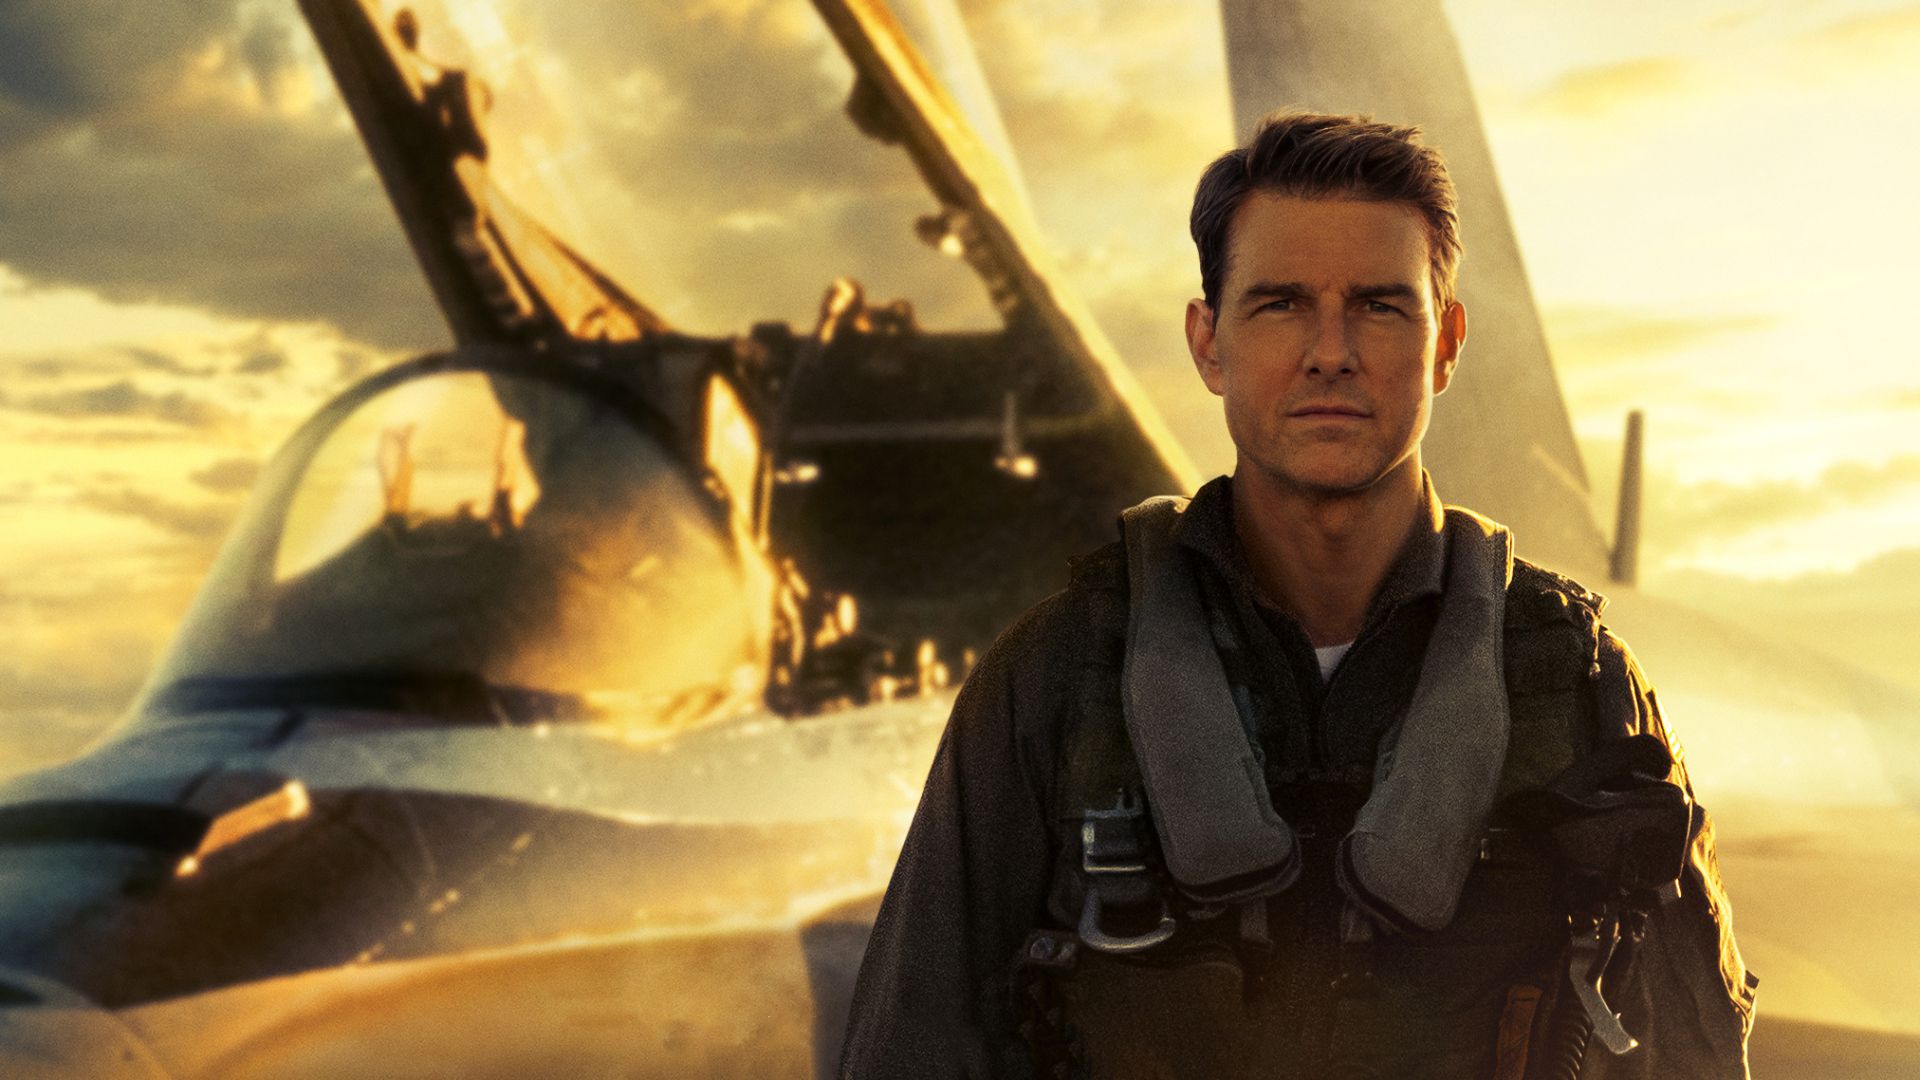 آموزش پرواز با جنگنده در ویدیو جدید فیلم تاپ گان 2 با بازی تام کروز